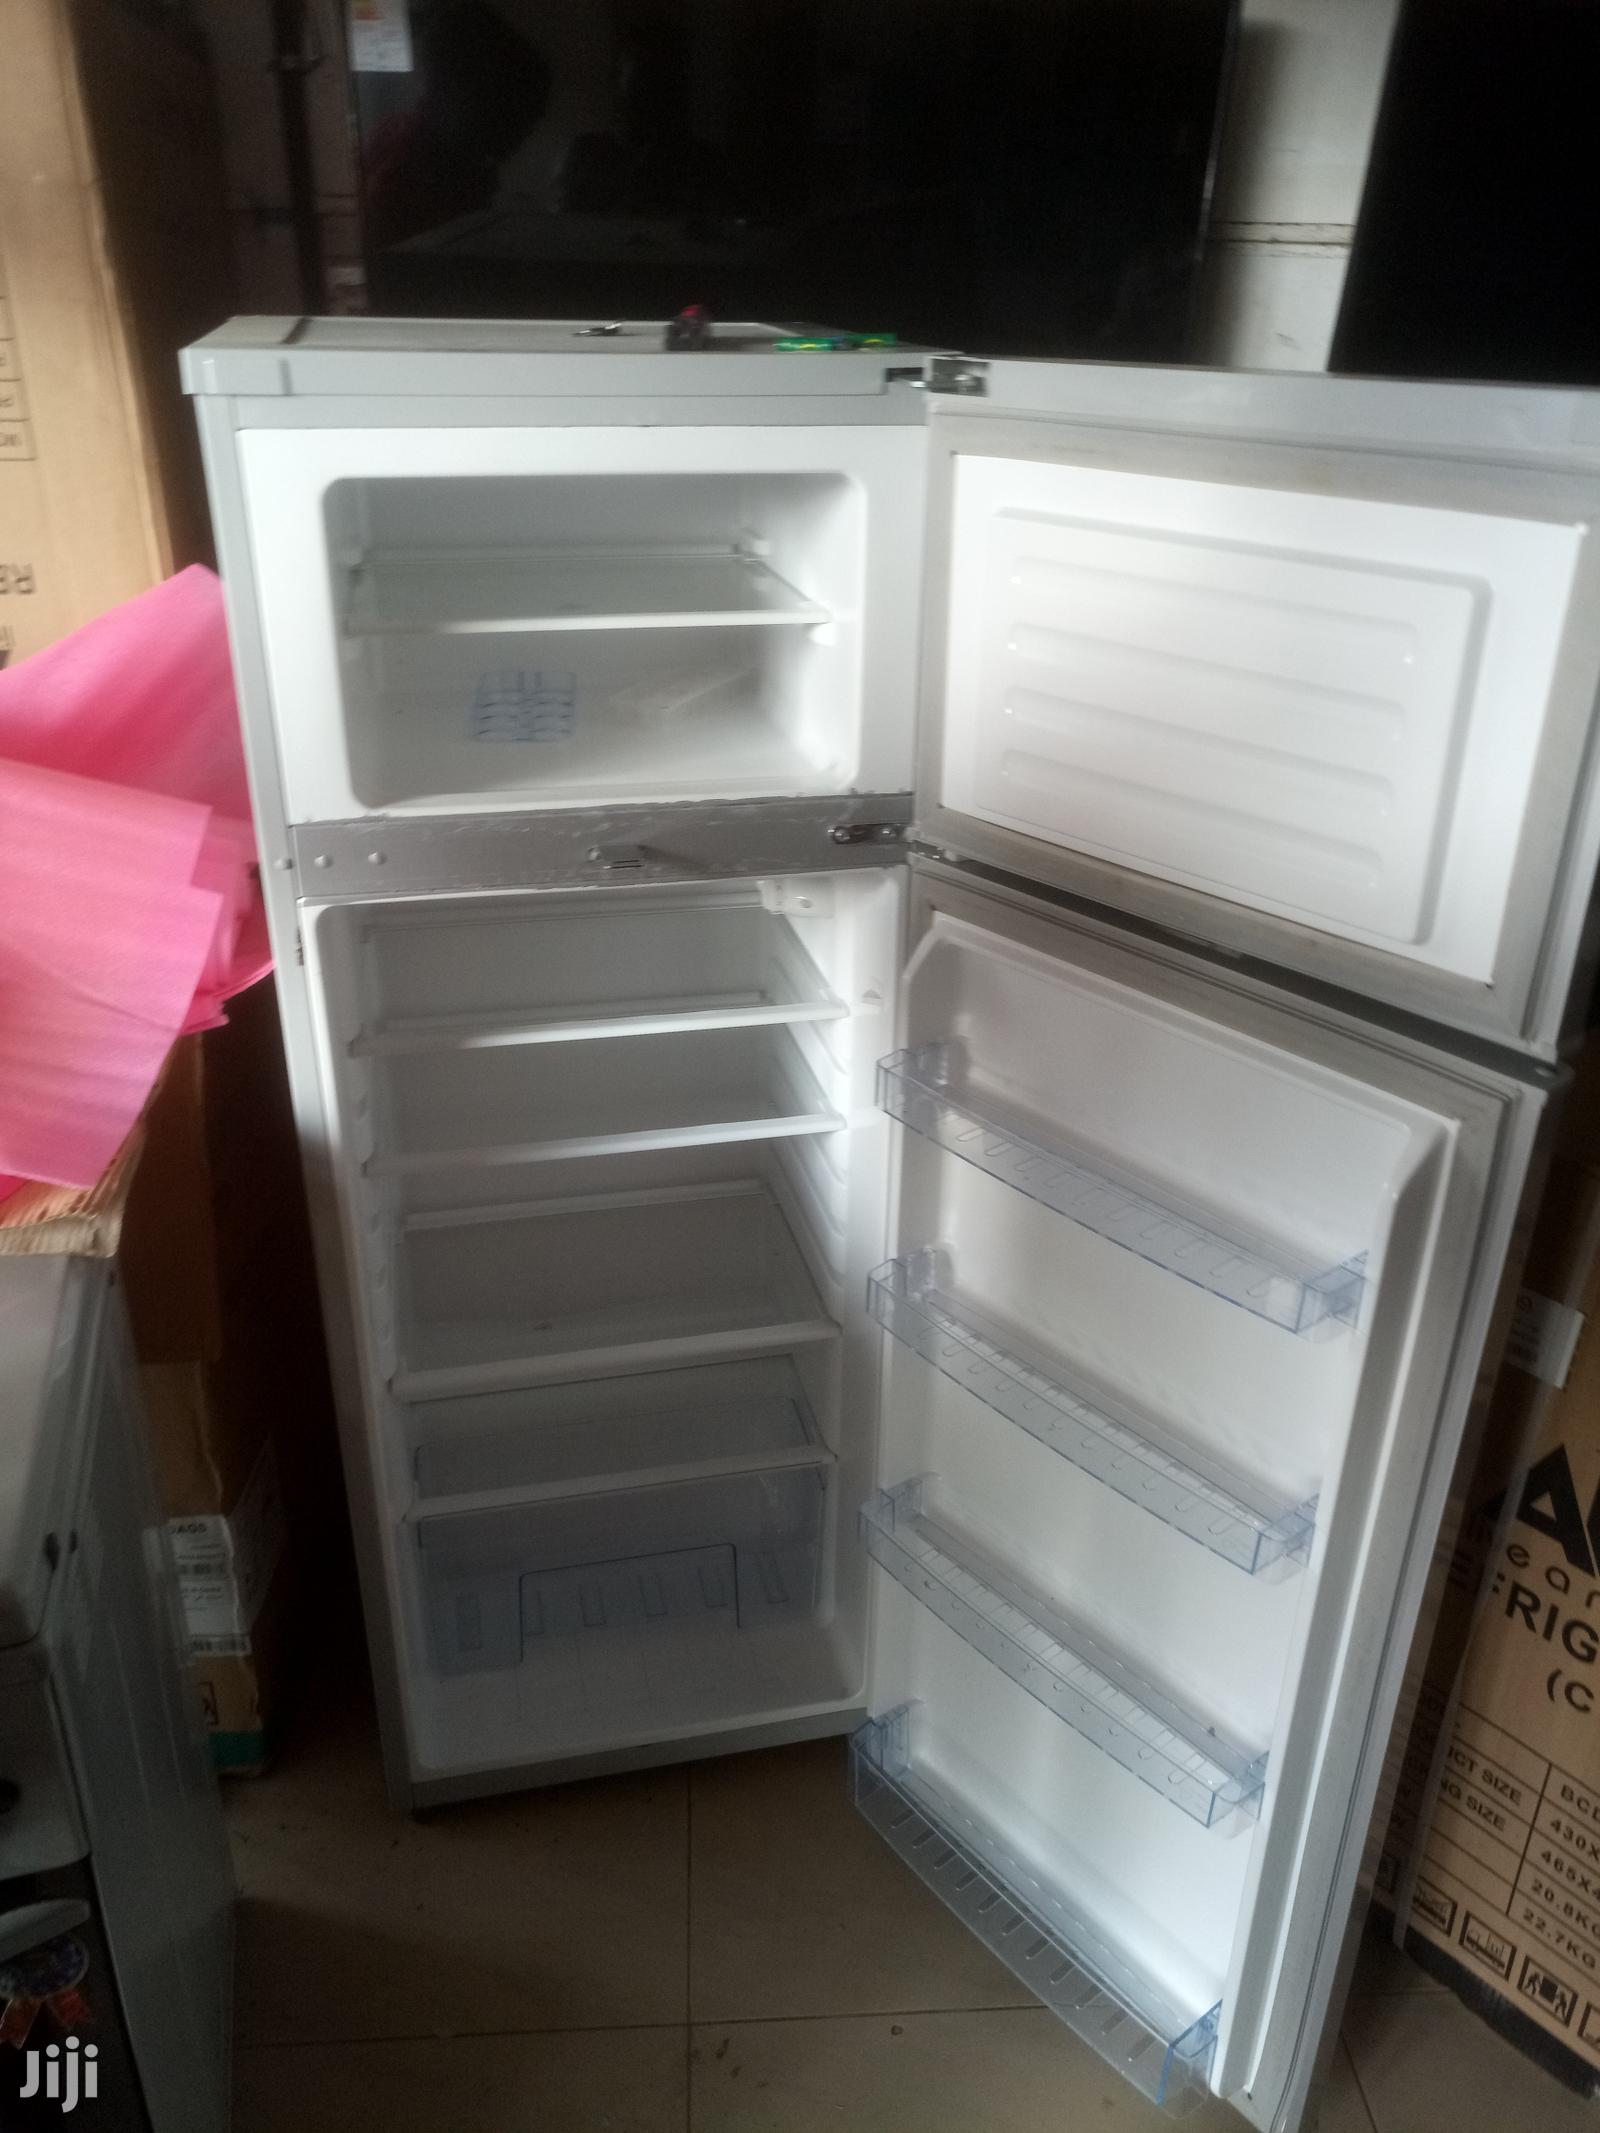 ADH 220 Litres Double Door Refrigerator